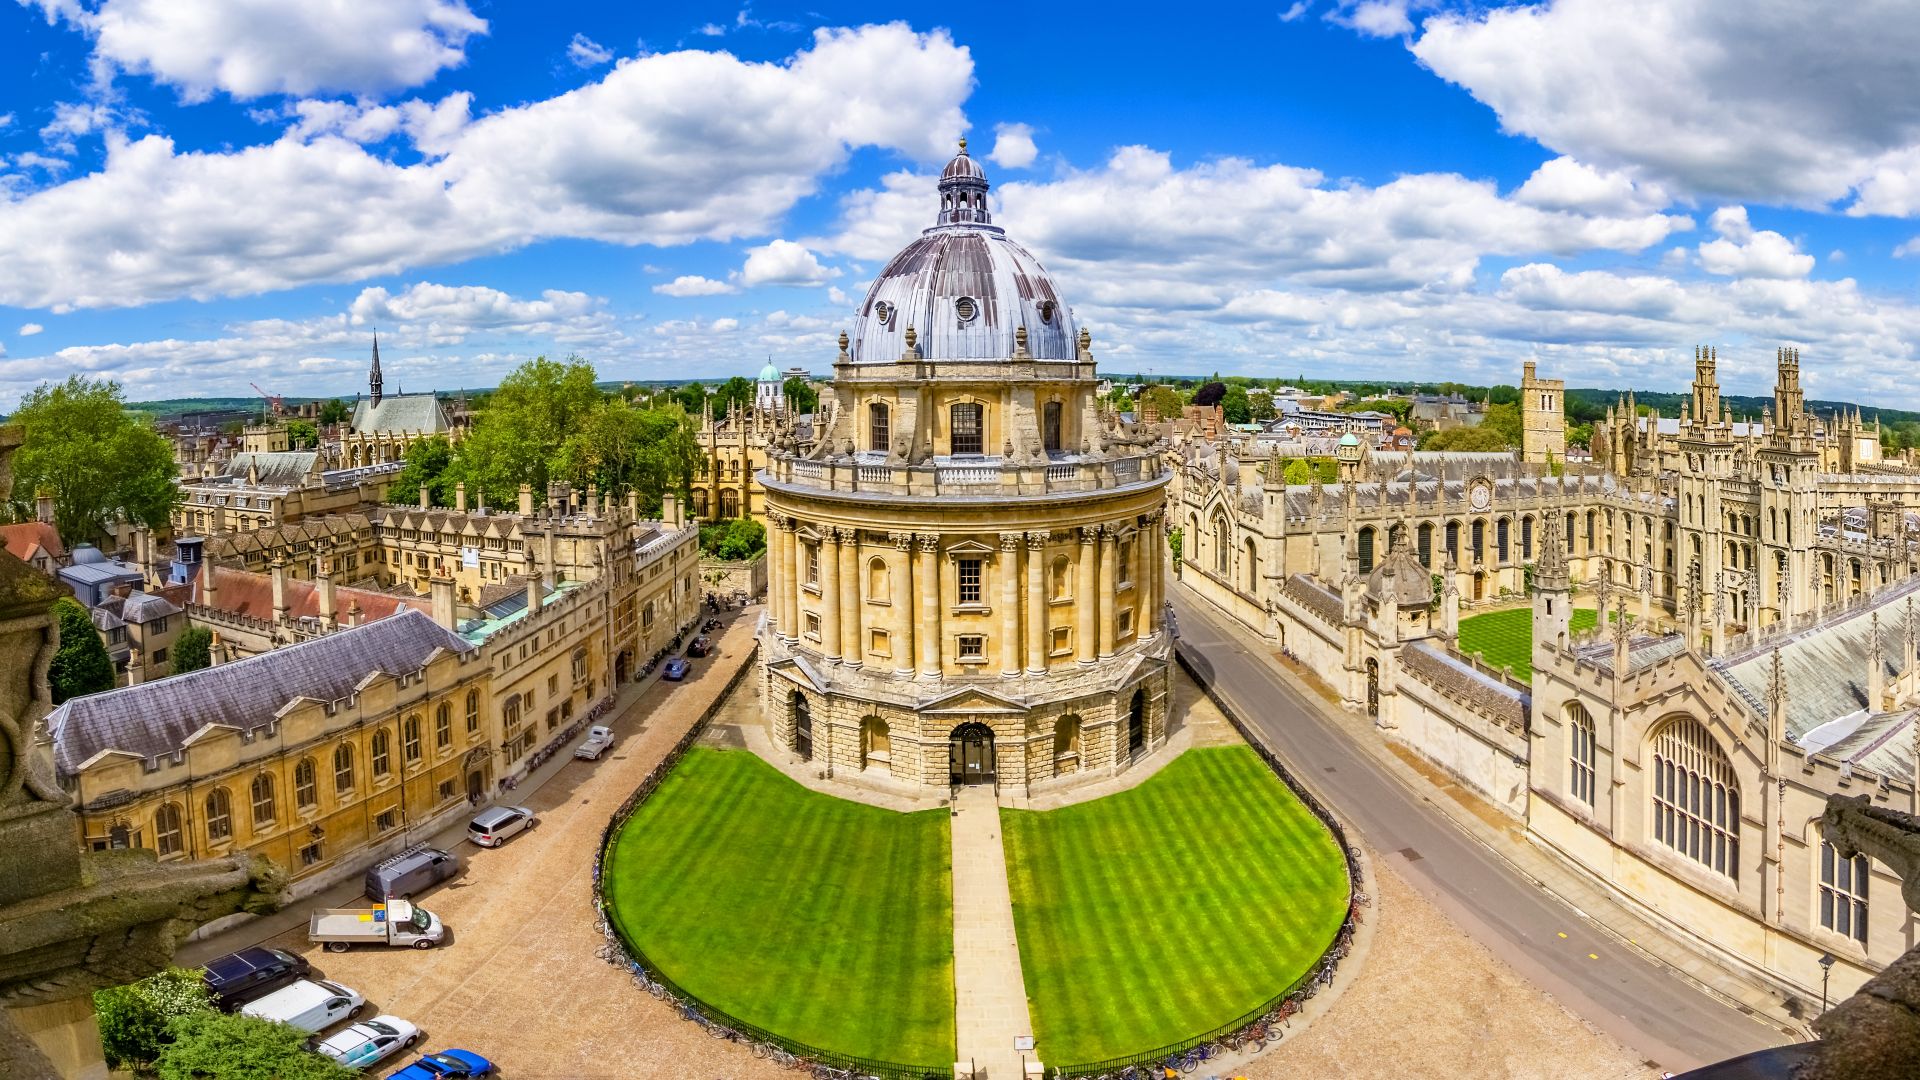 Calles de Oxford-landmark, Inglaterra - vista general desde la torre de una iglesia con la Biblioteca Bodleian y All Souls College